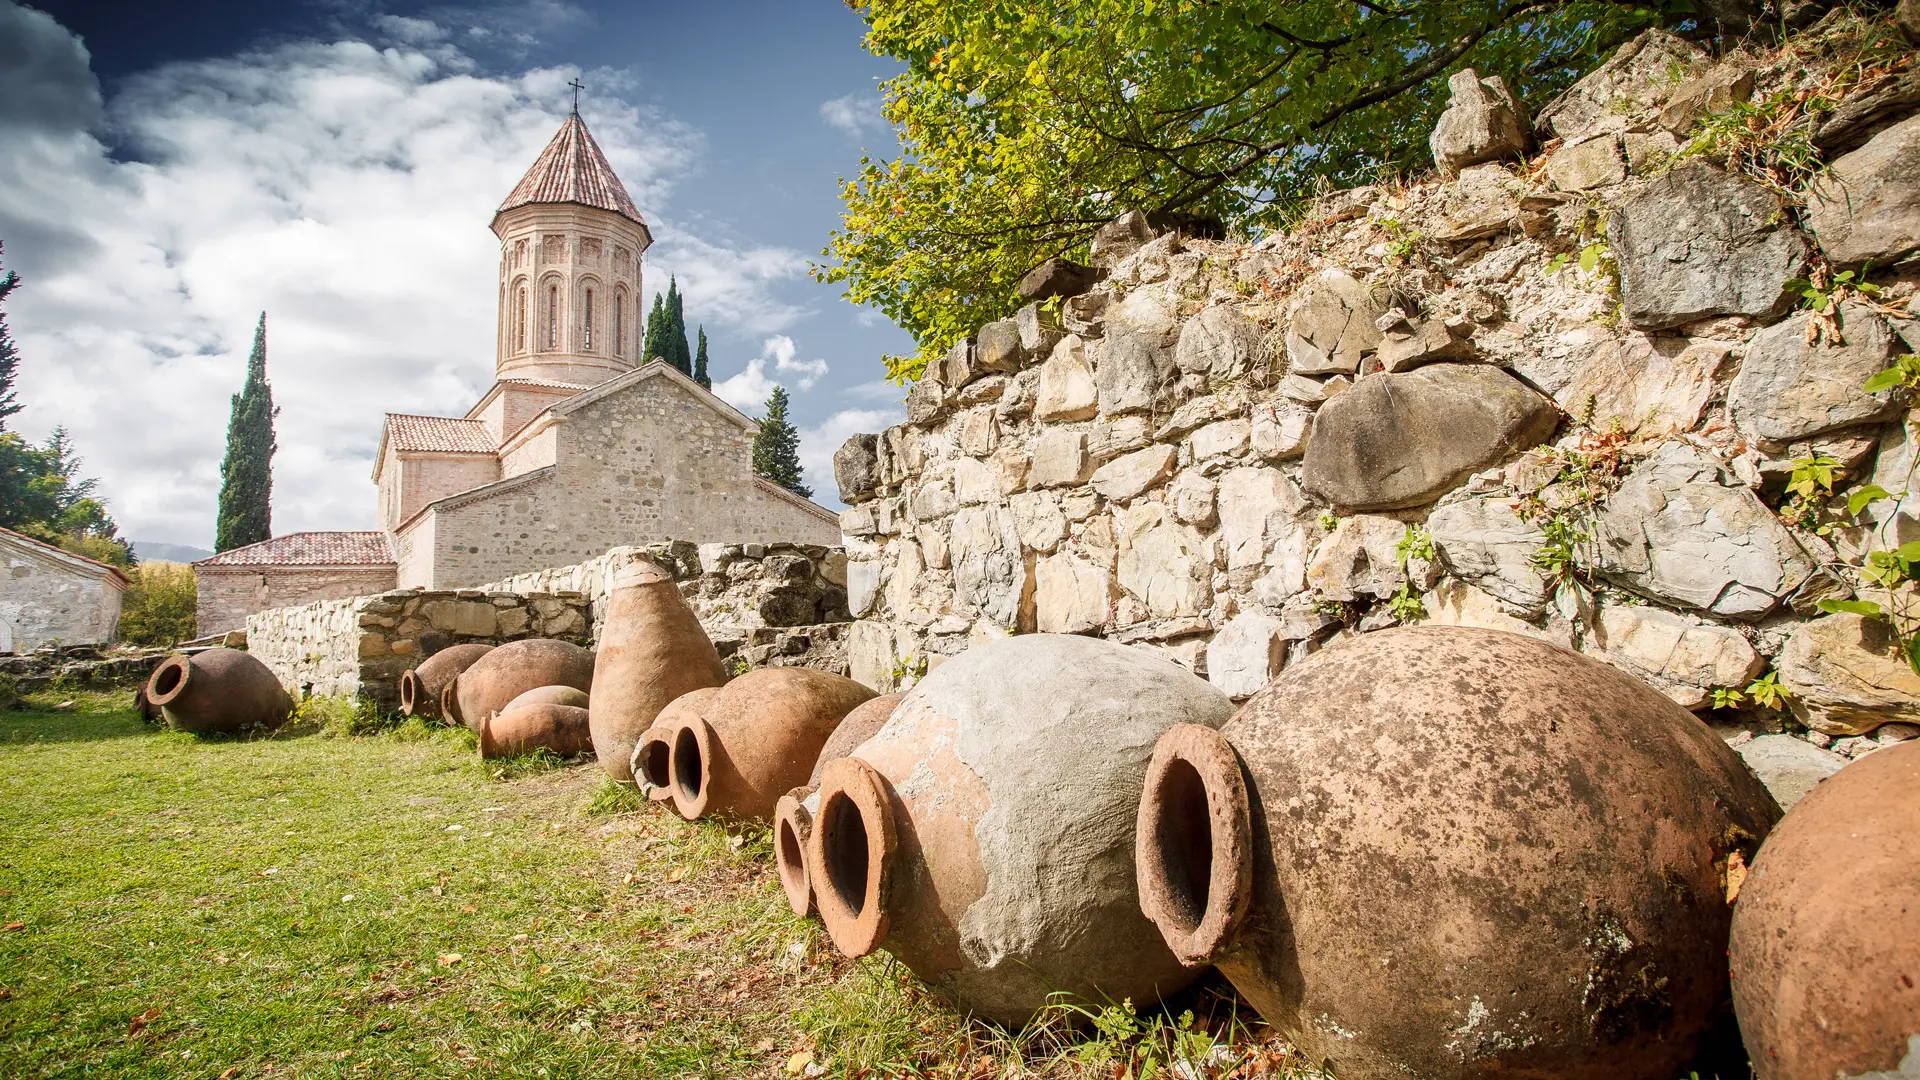 Qvevri-Weintöpfe im Alasani-Tal mit einer mittelalterlichen orthodoxen Kirche und dem Kaukasusgebirge in der Ferne spiegeln das Weinbauerbe Georgiens wider.